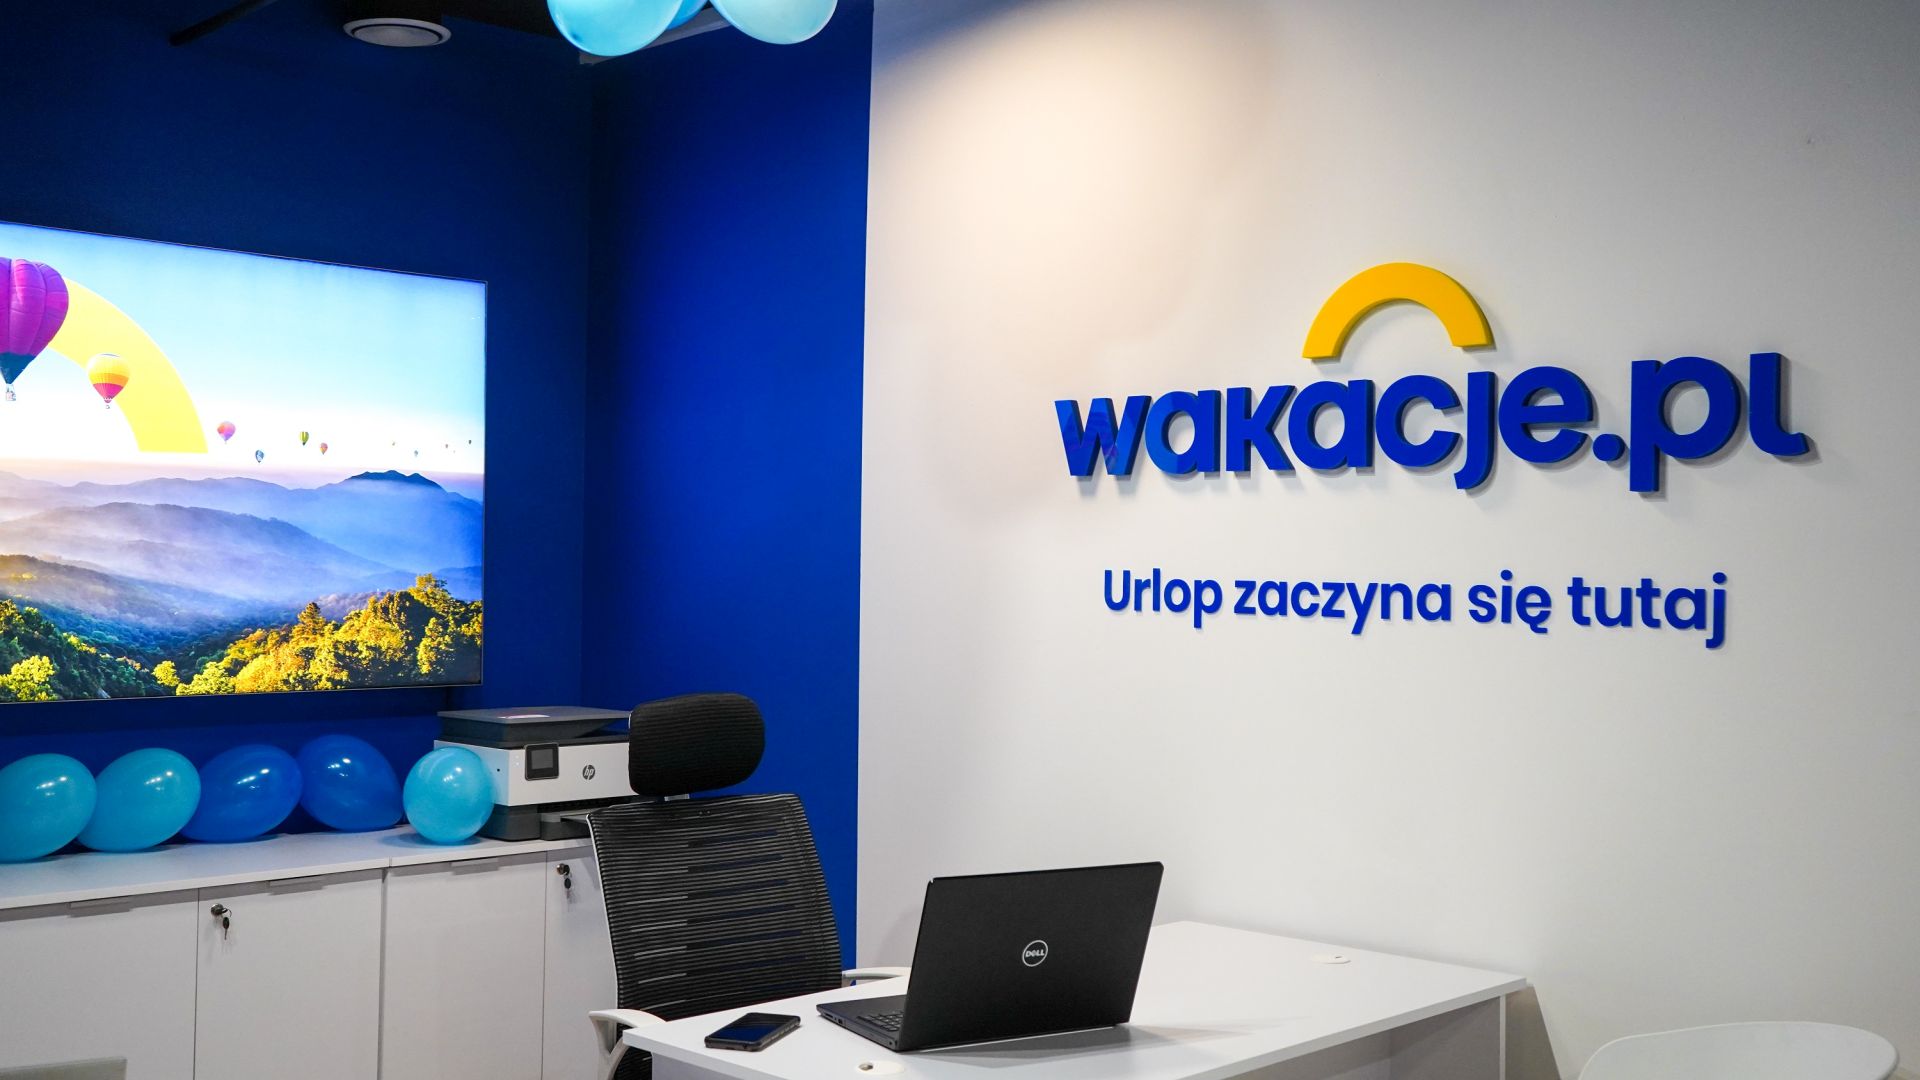 Fot. mat pras. W CH 3 Stawy możemy już skorzystać z oferty biura podróży Wakacje.pl